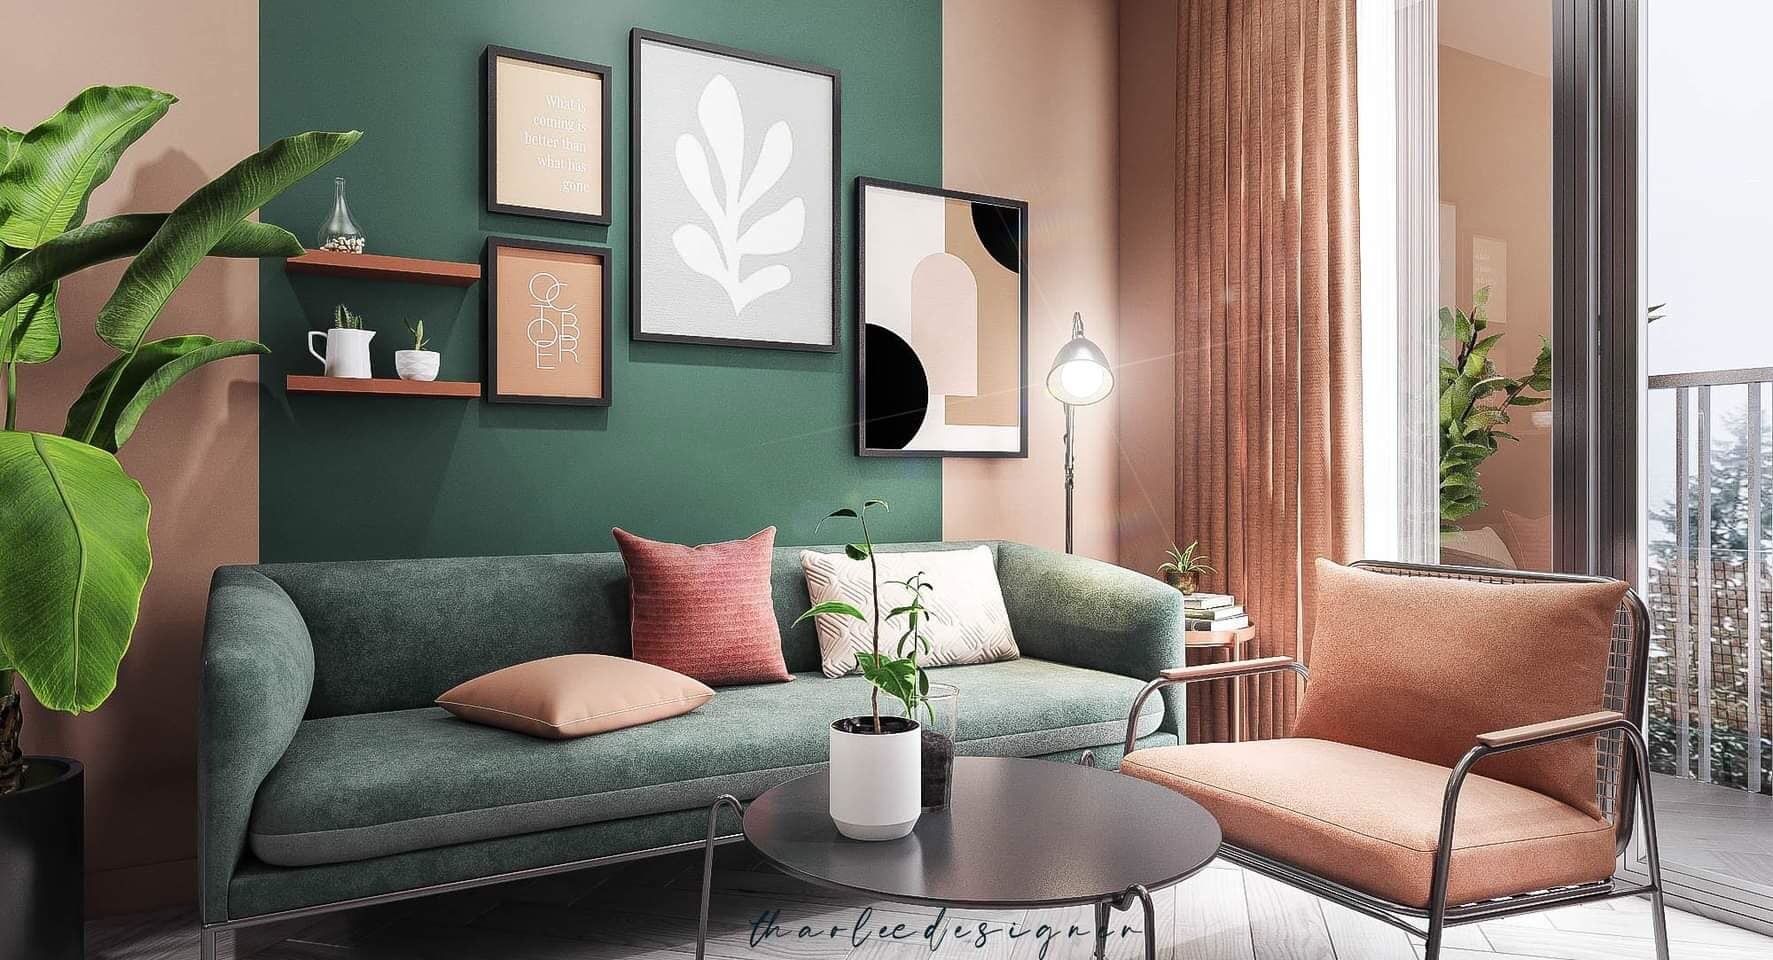 Thiết kế nội thất theo phong cách Color Block tông xanh - hồng ấn tượng